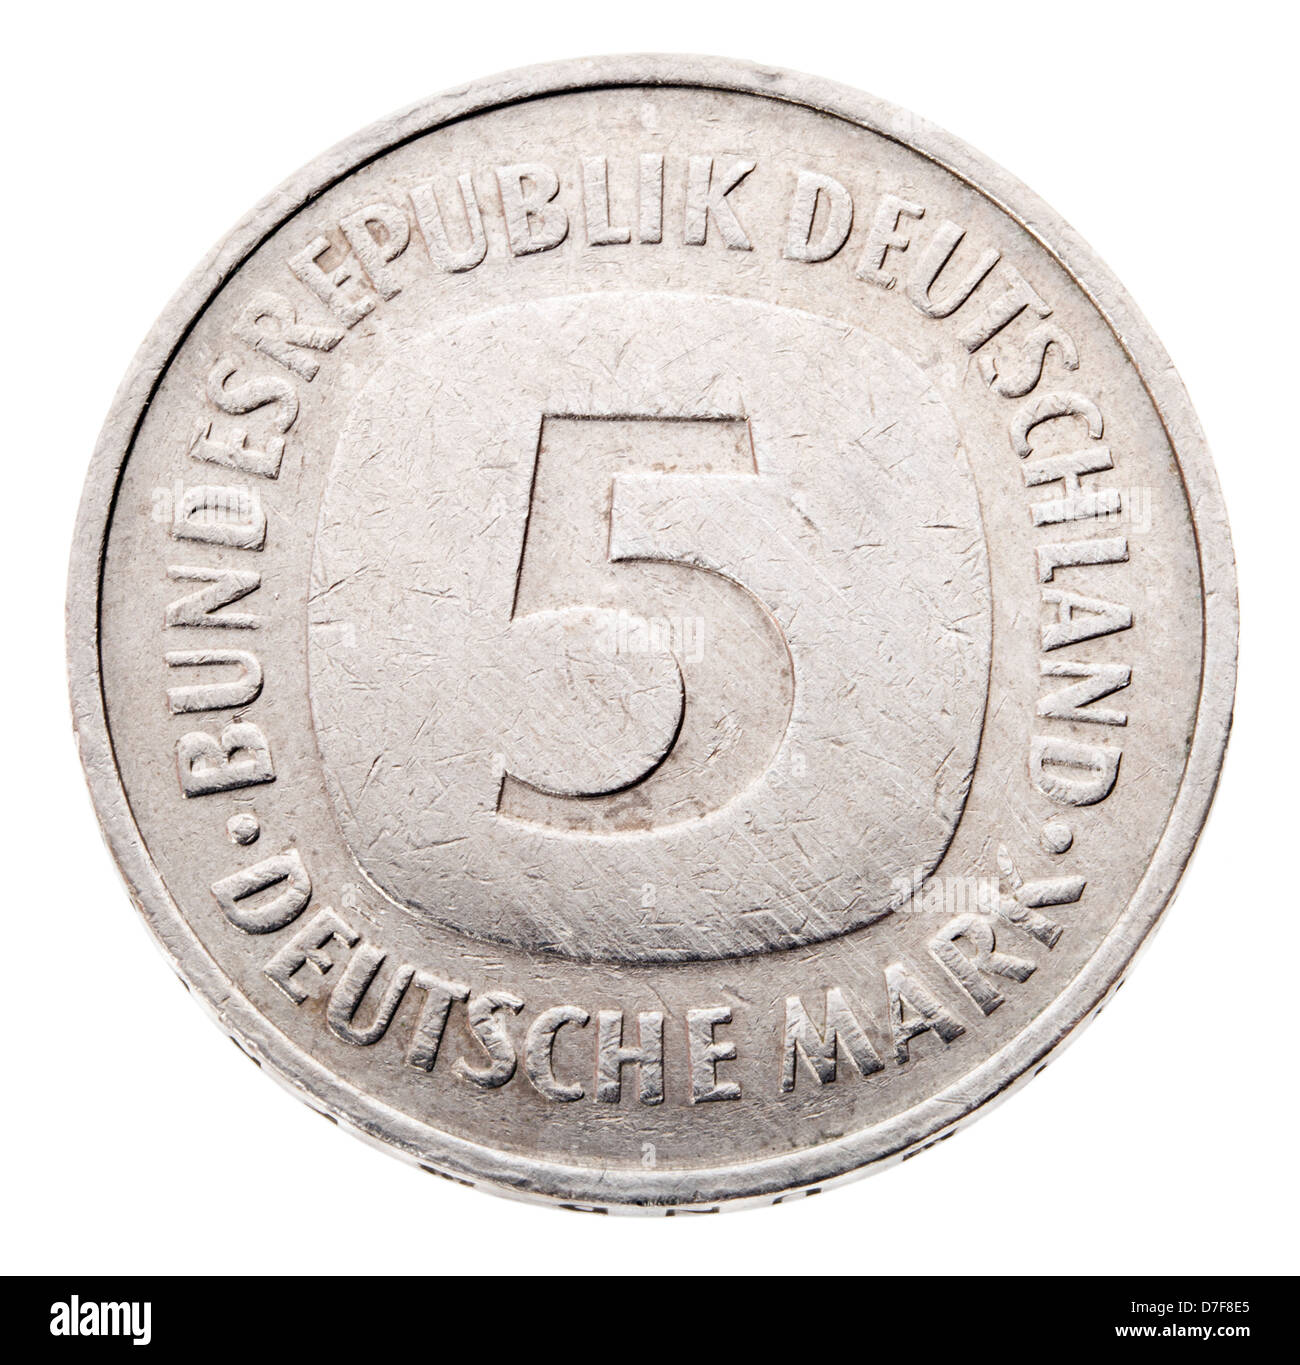 Frontale Ansicht Vorderseite (Köpfe) Seite eine 5 Deutsche Mark (DM) Münze in 1980 geprägt. Dargestellt ist die Bezeichnung Münze. Die Deutsche Mark war Stockfoto